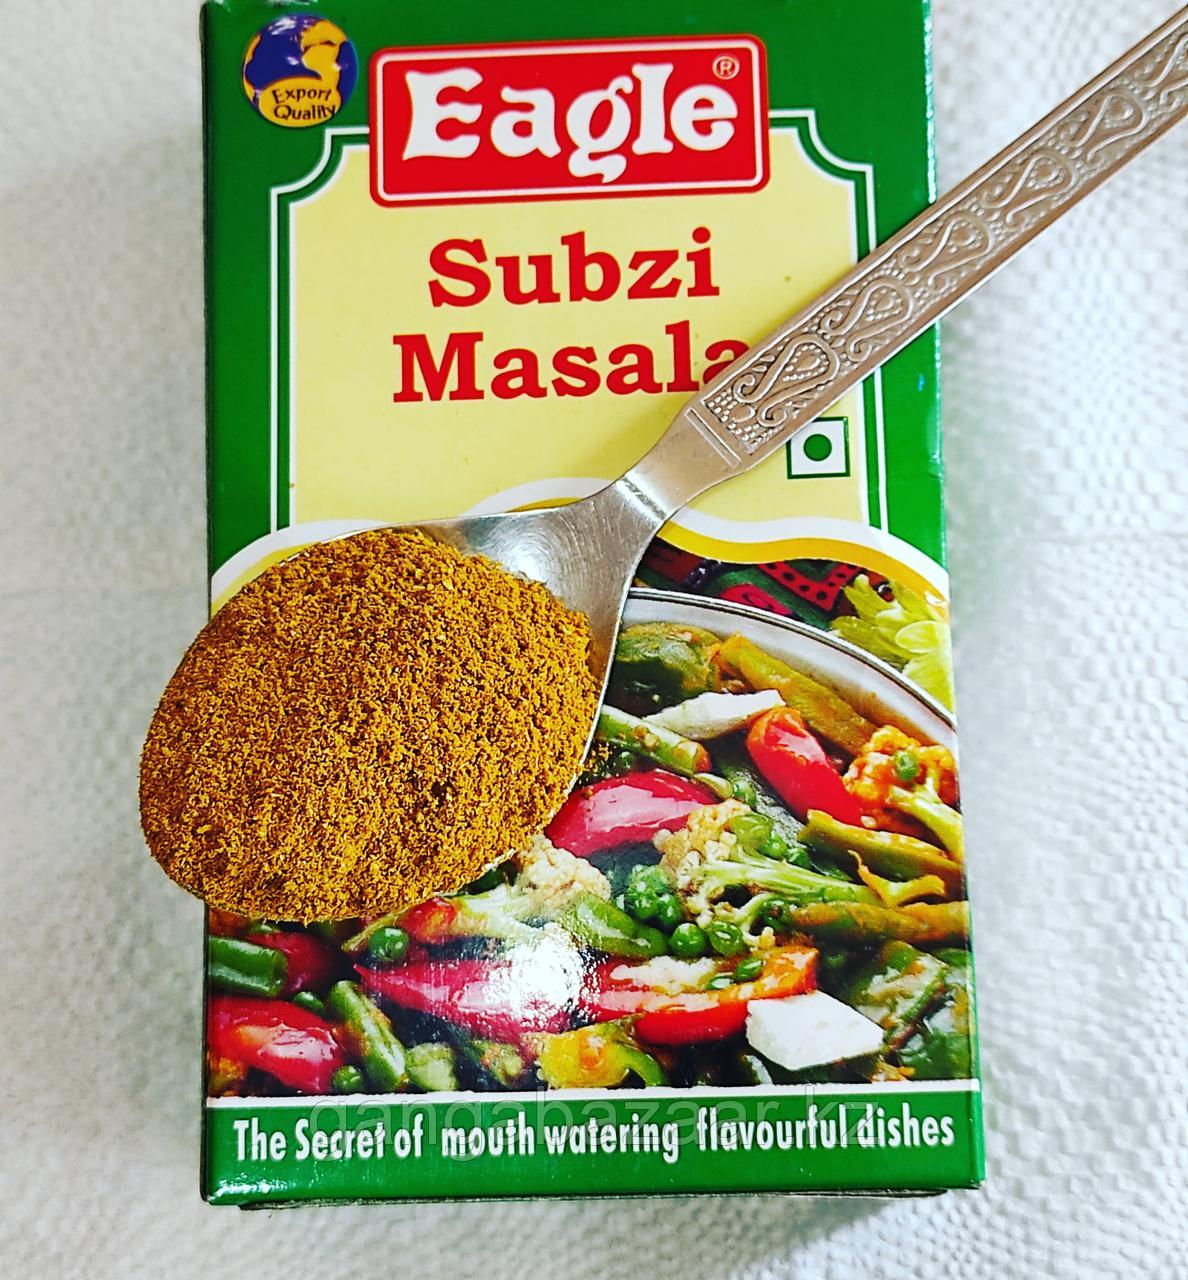 Сабзи масала (Subzi masala, Eagle), 100 гр - индийская приправа для овощных блюд